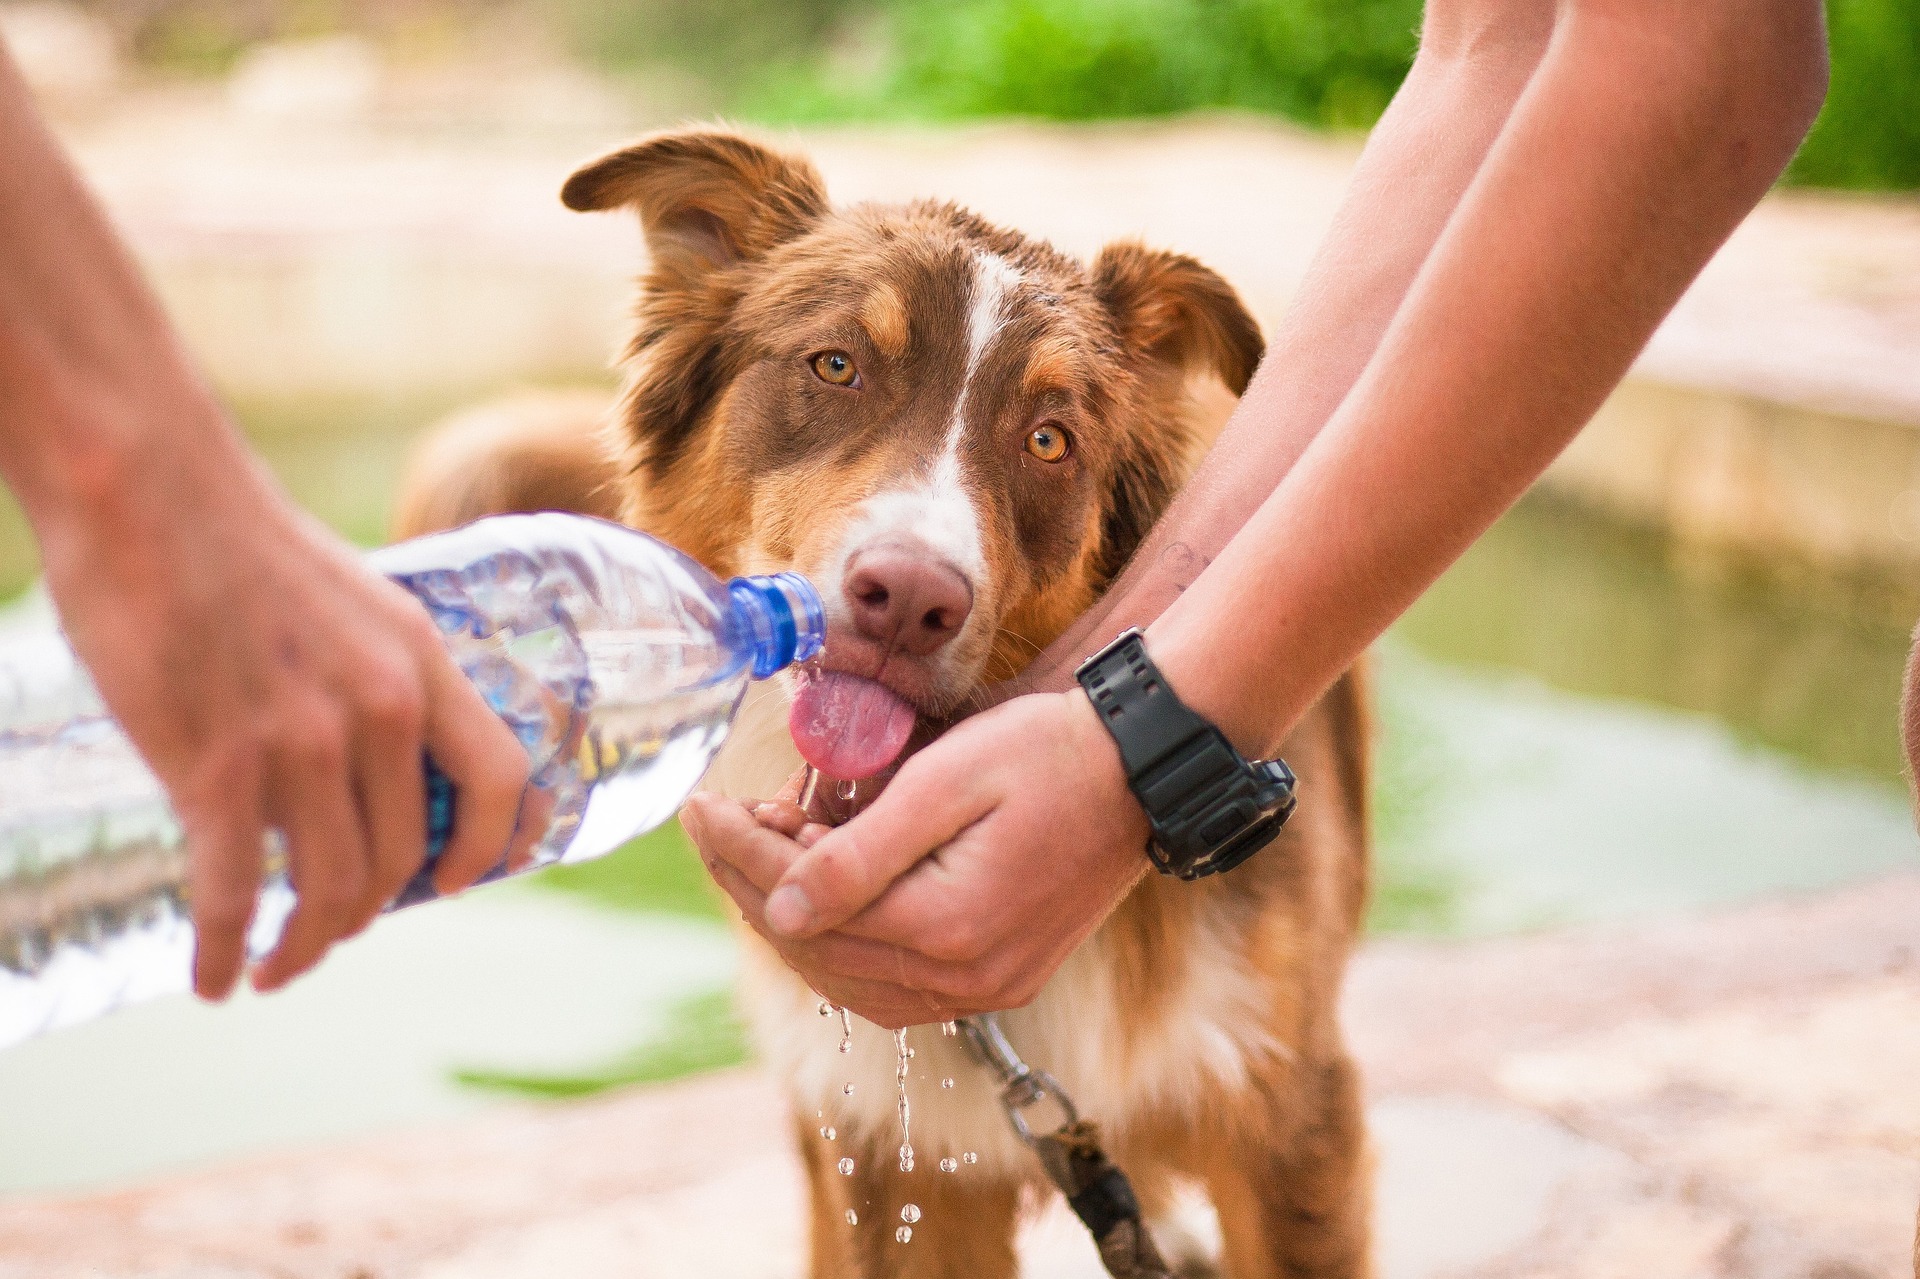 Oferecer água fresca durante o passeio e em outros momentos do dia, evita que o animal fique desidratado. Foto: Pixabay